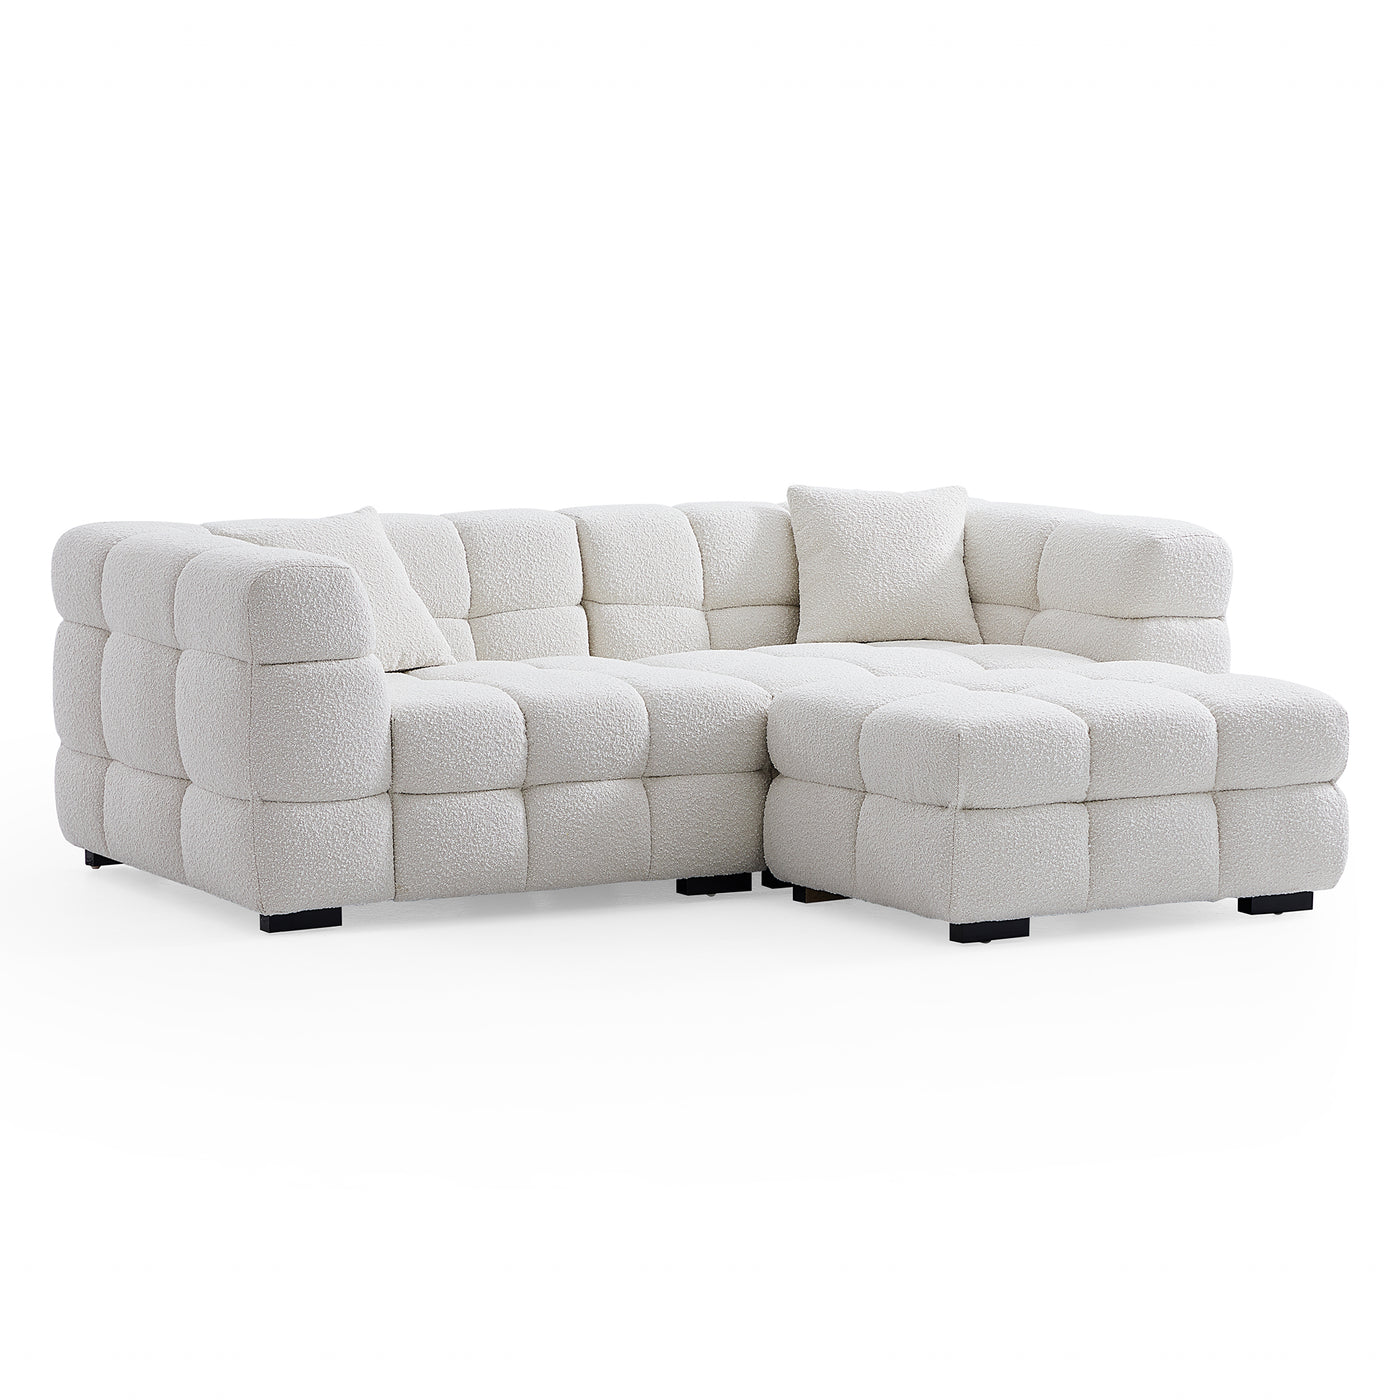 cushy-cream-boucle-fabric-tufted-sofa-with-ottoman-hidden